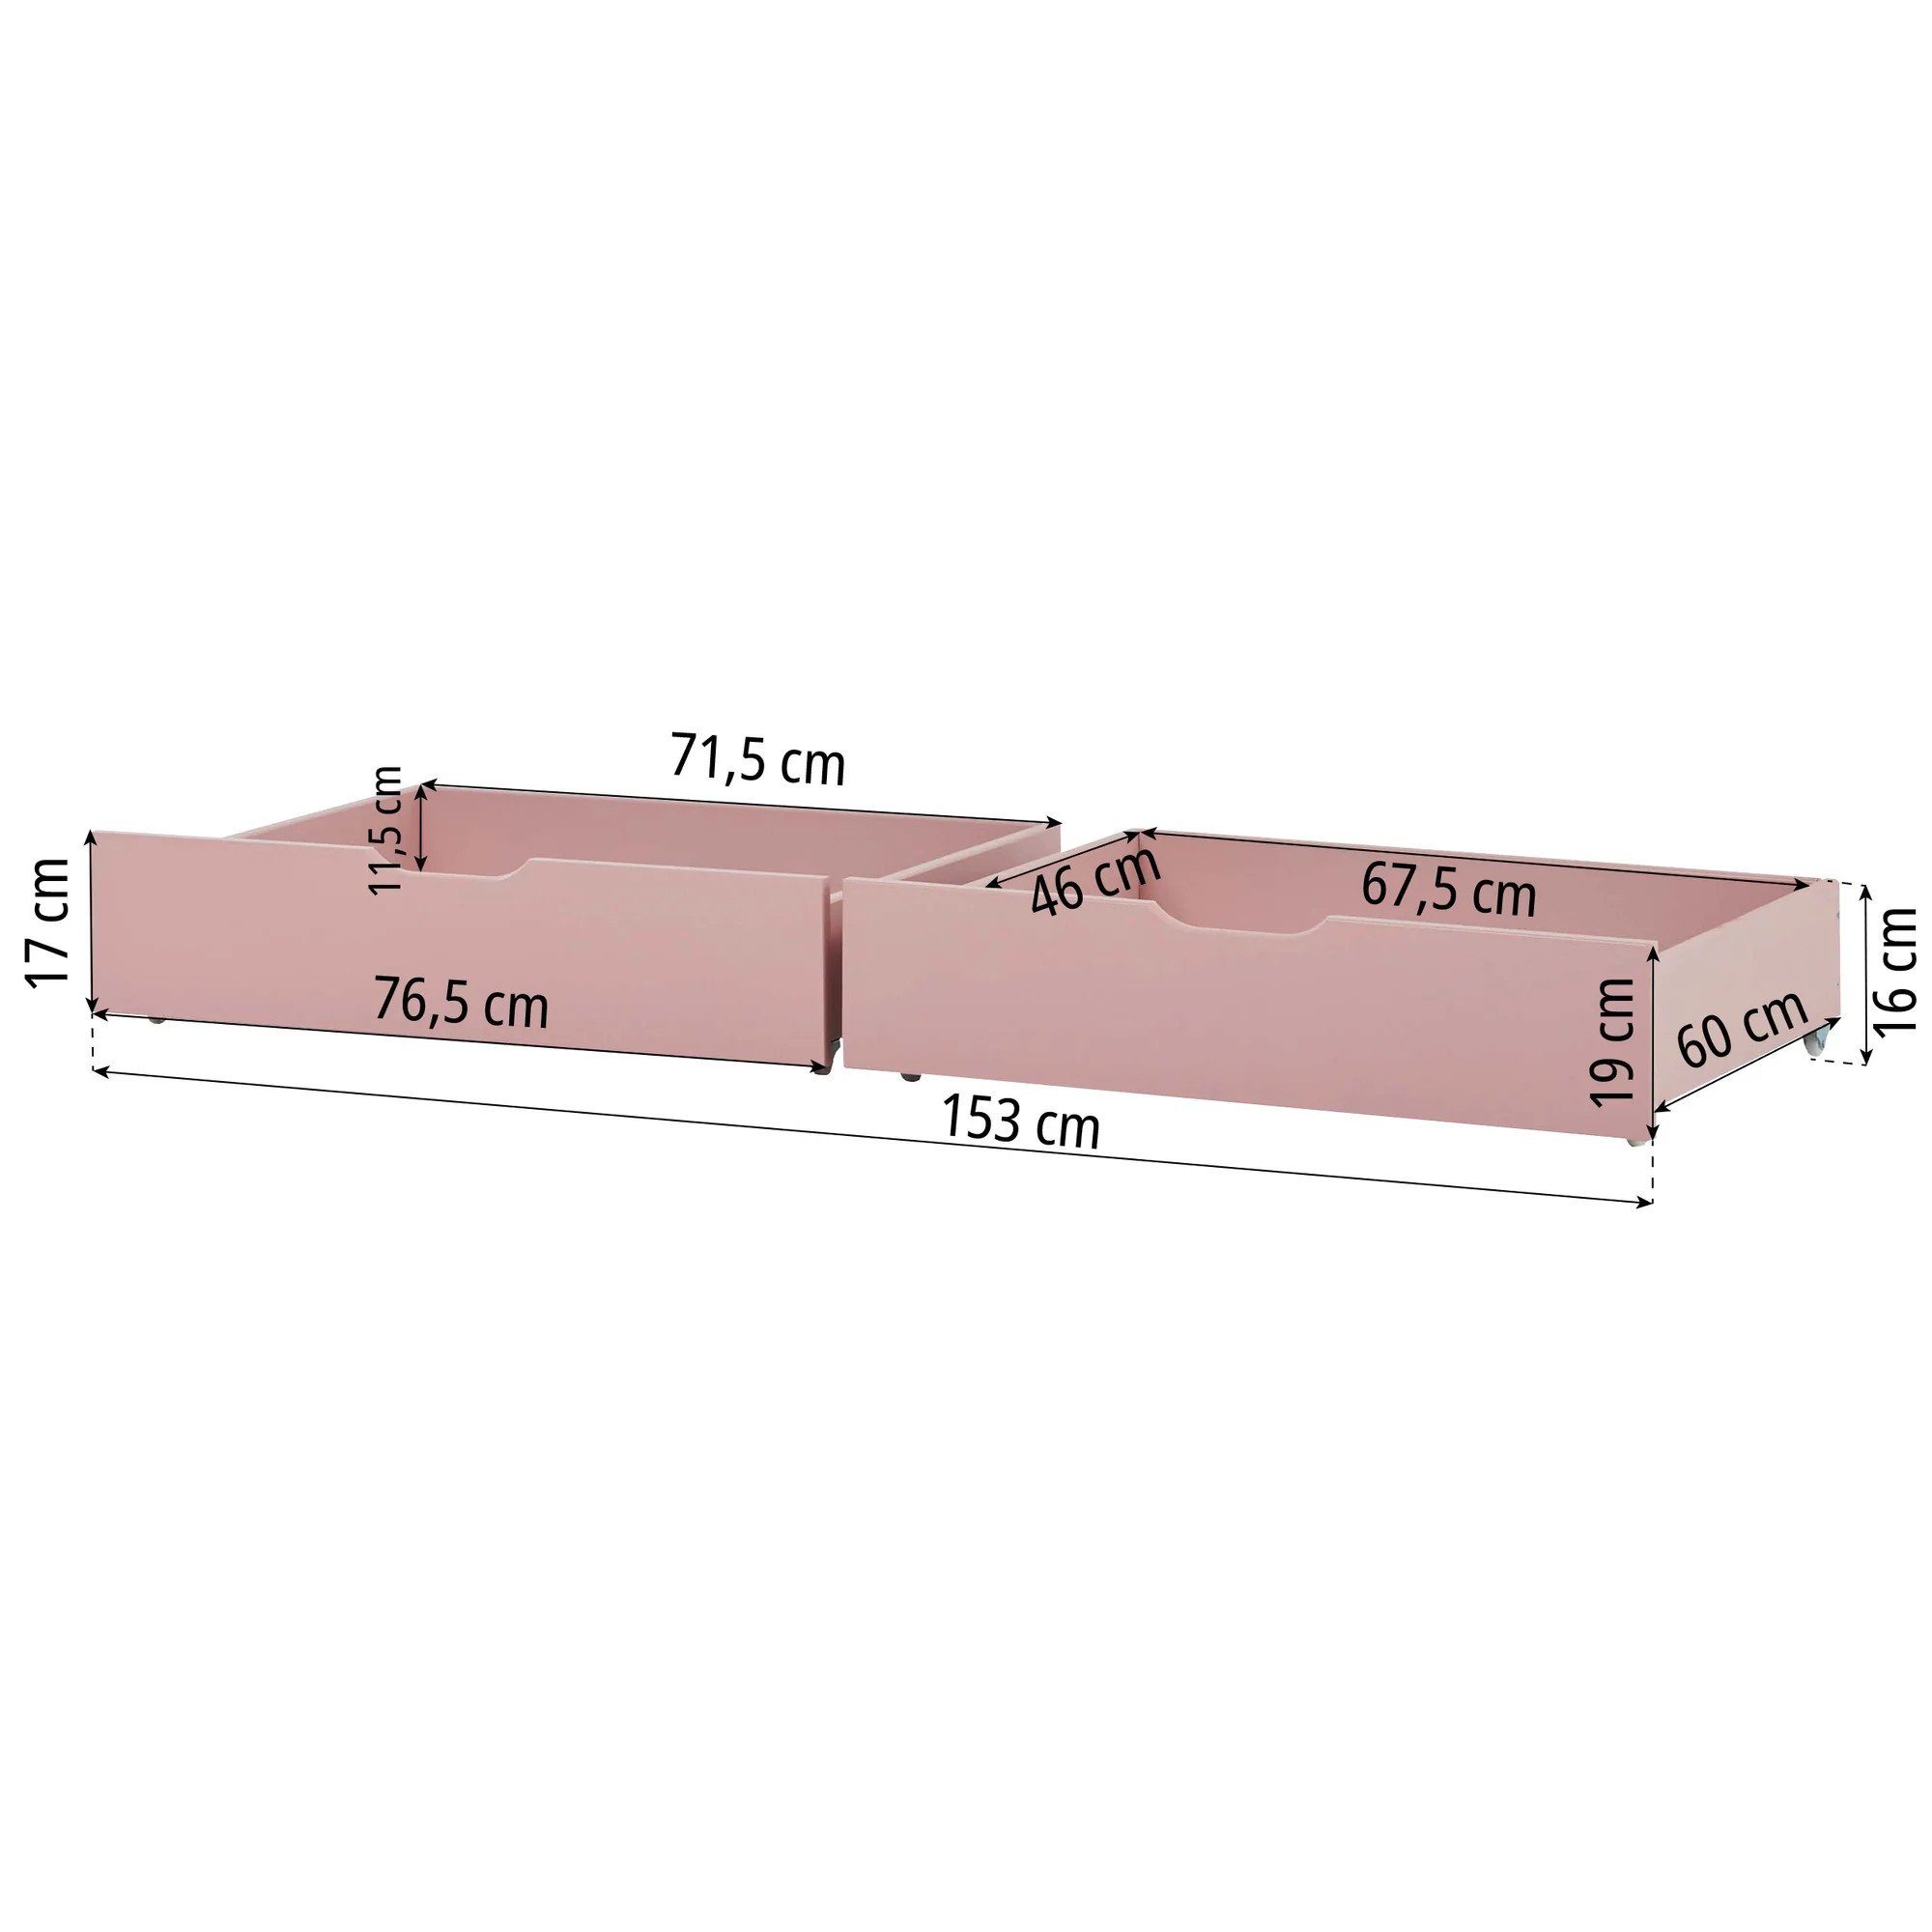 70x160 cm Schubladenset Betten Bettschubkasten Hoppekids Rosa/Pink für